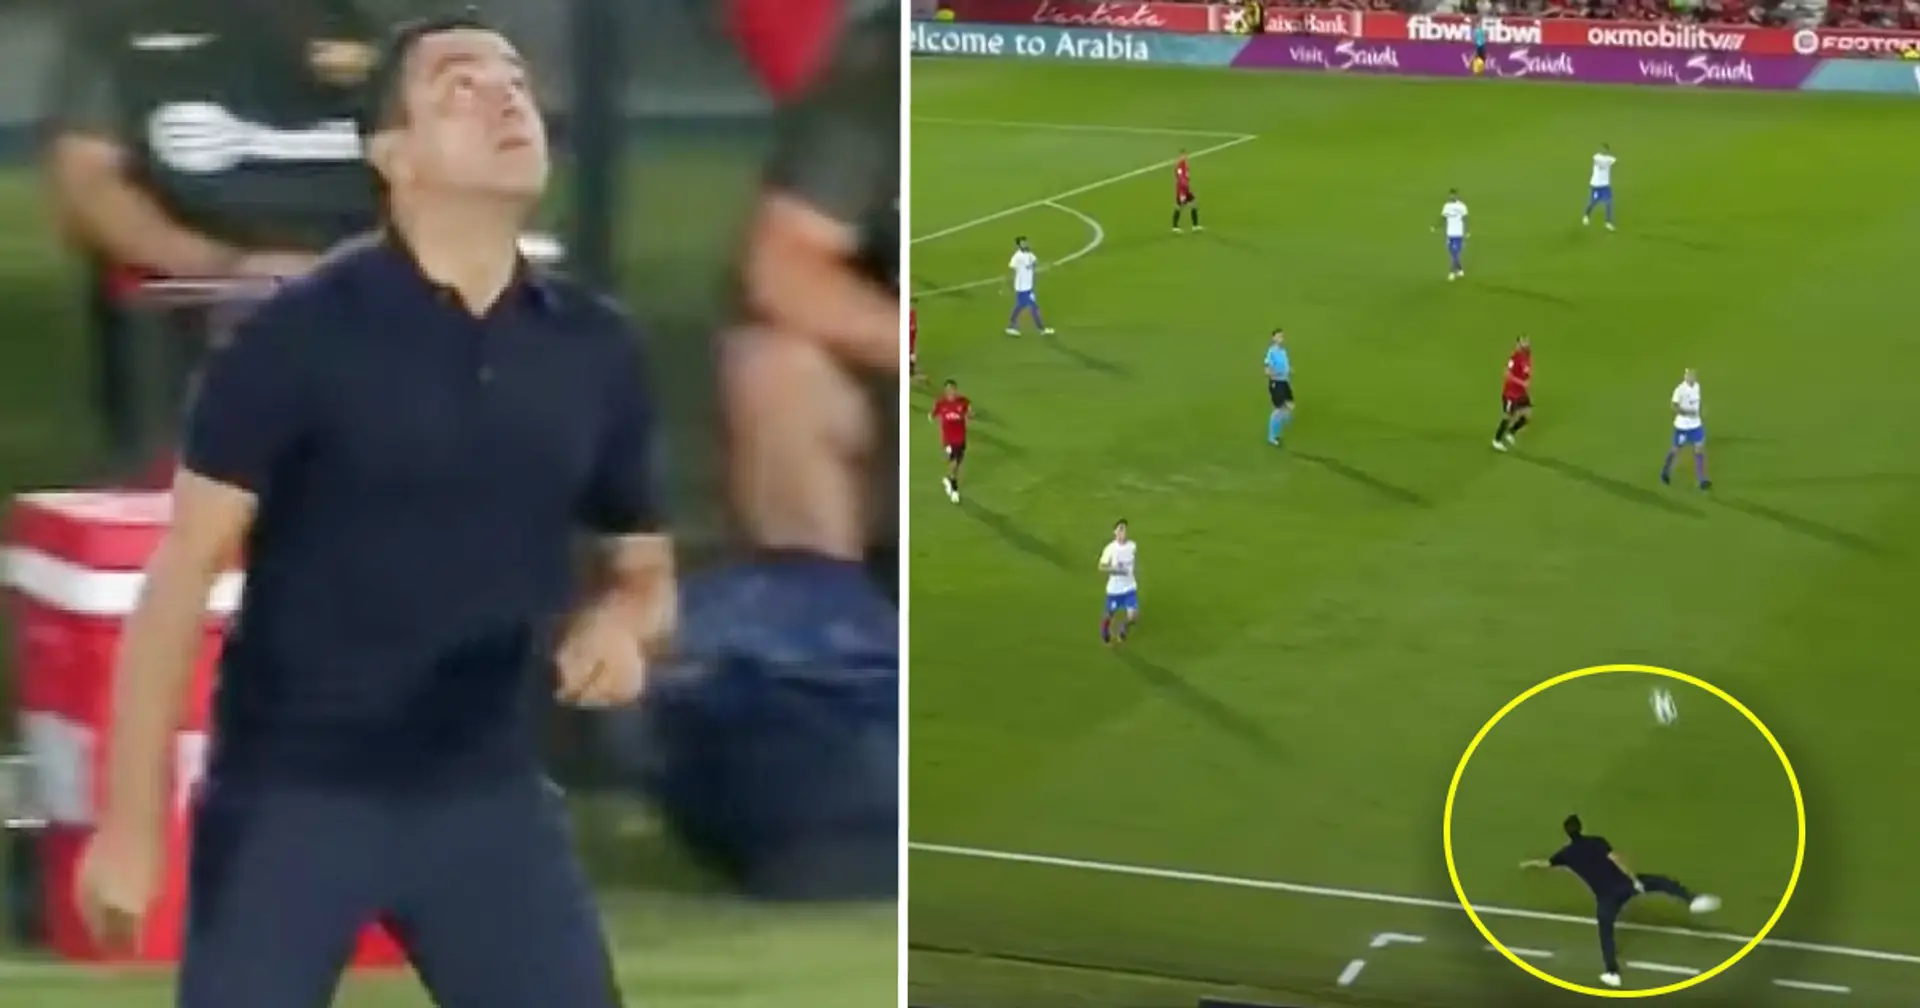 Filmé: Xavi montre un contrôle insensé avec le ballon pendant le match contre Majorque, les fans remarquent une chose